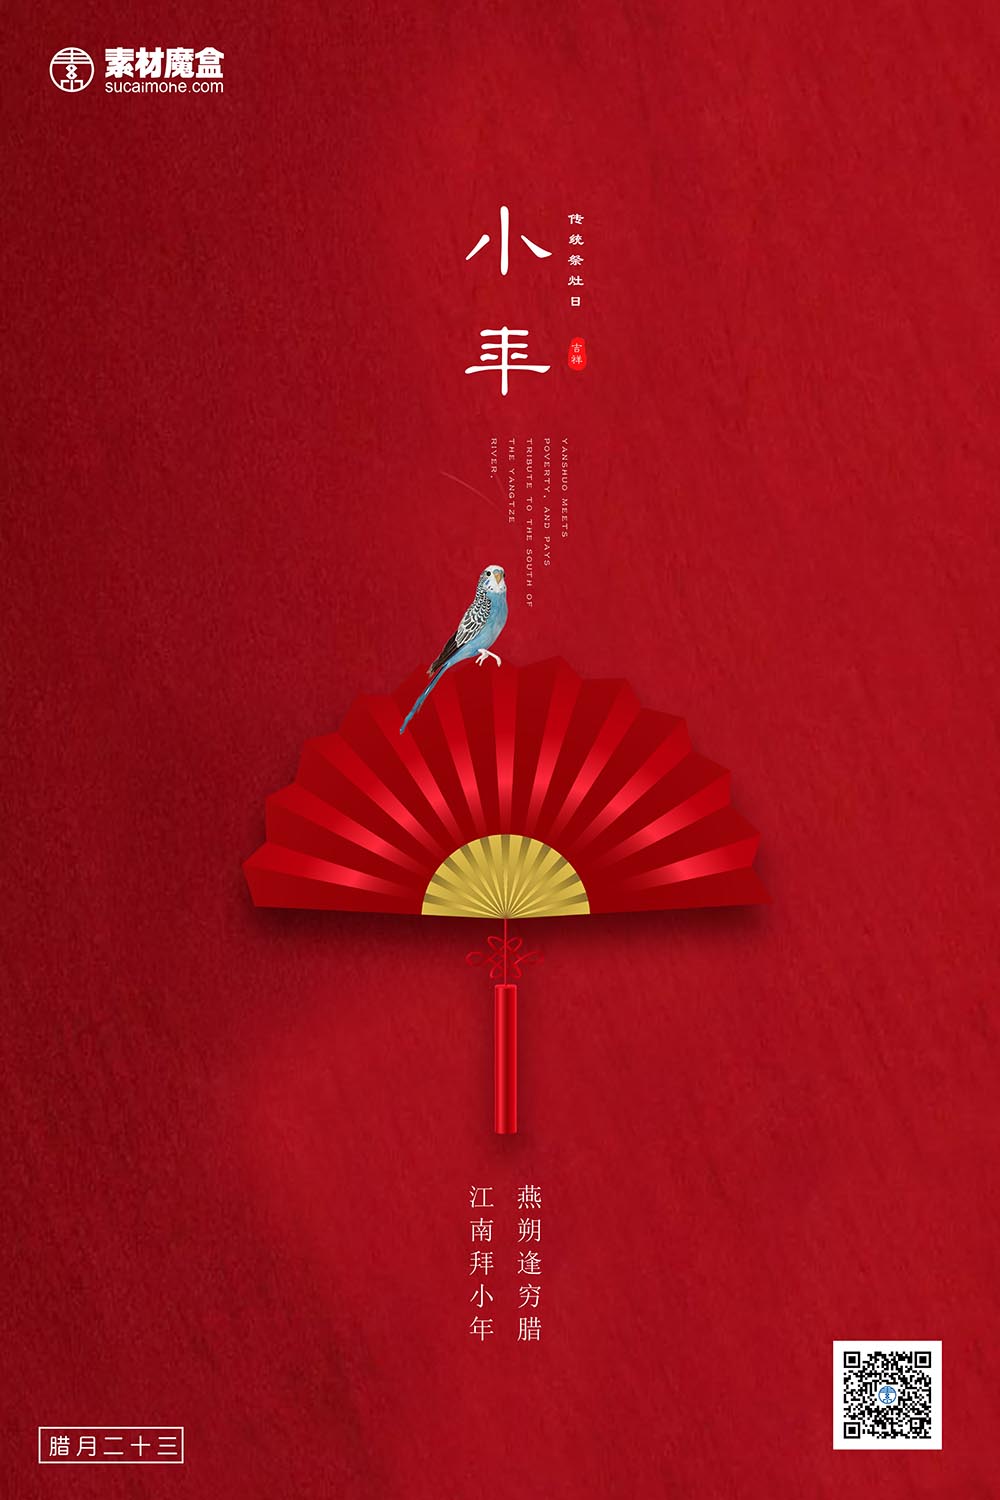 创意极简风格中国风小年户外海报PSD源文件